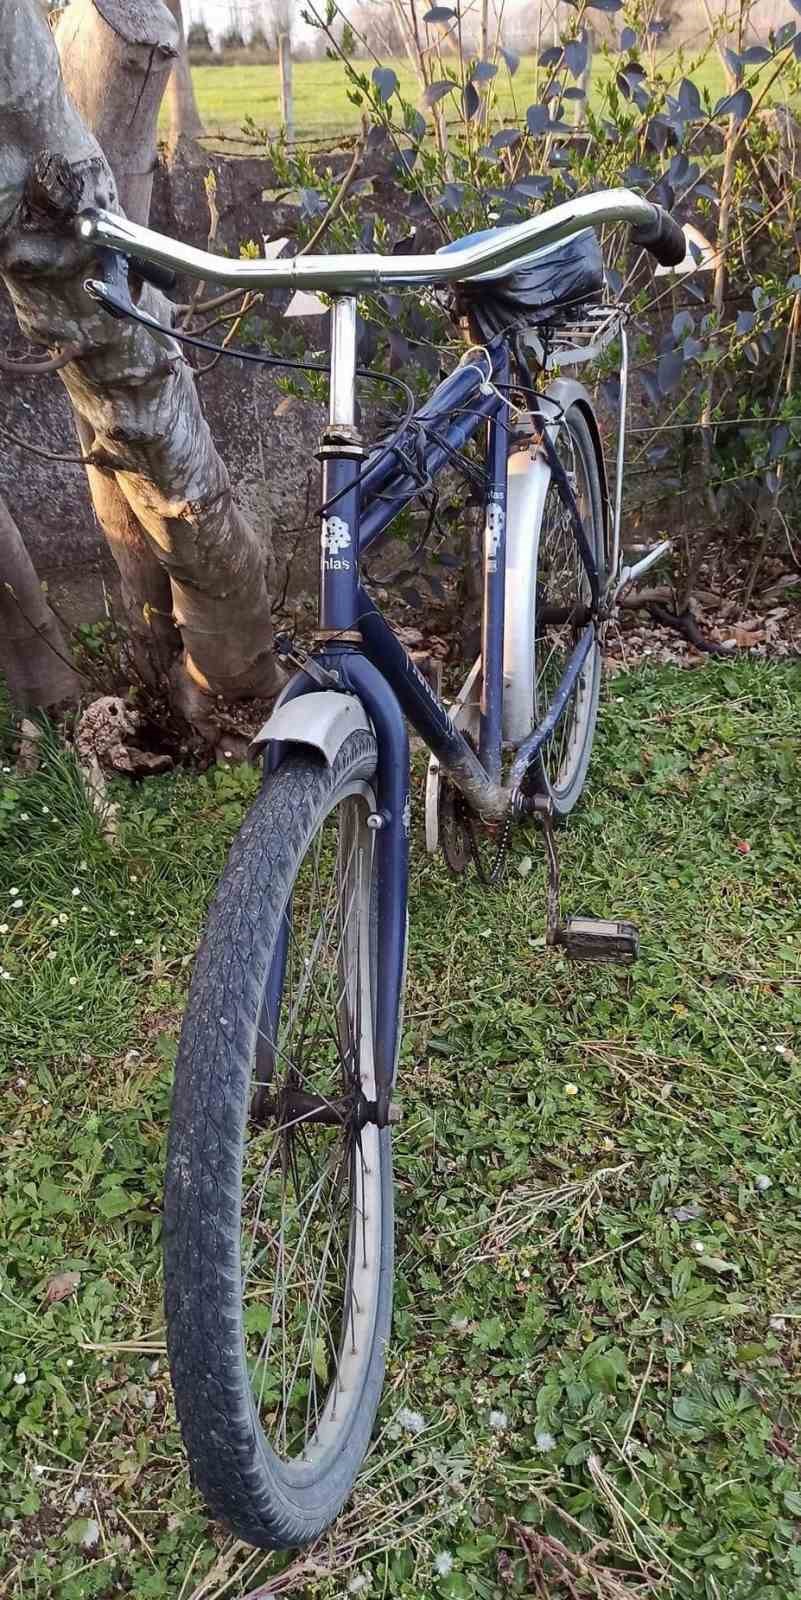 Camiden evine giderken dengesini kaybeden bisikletli otomobile çarptı
